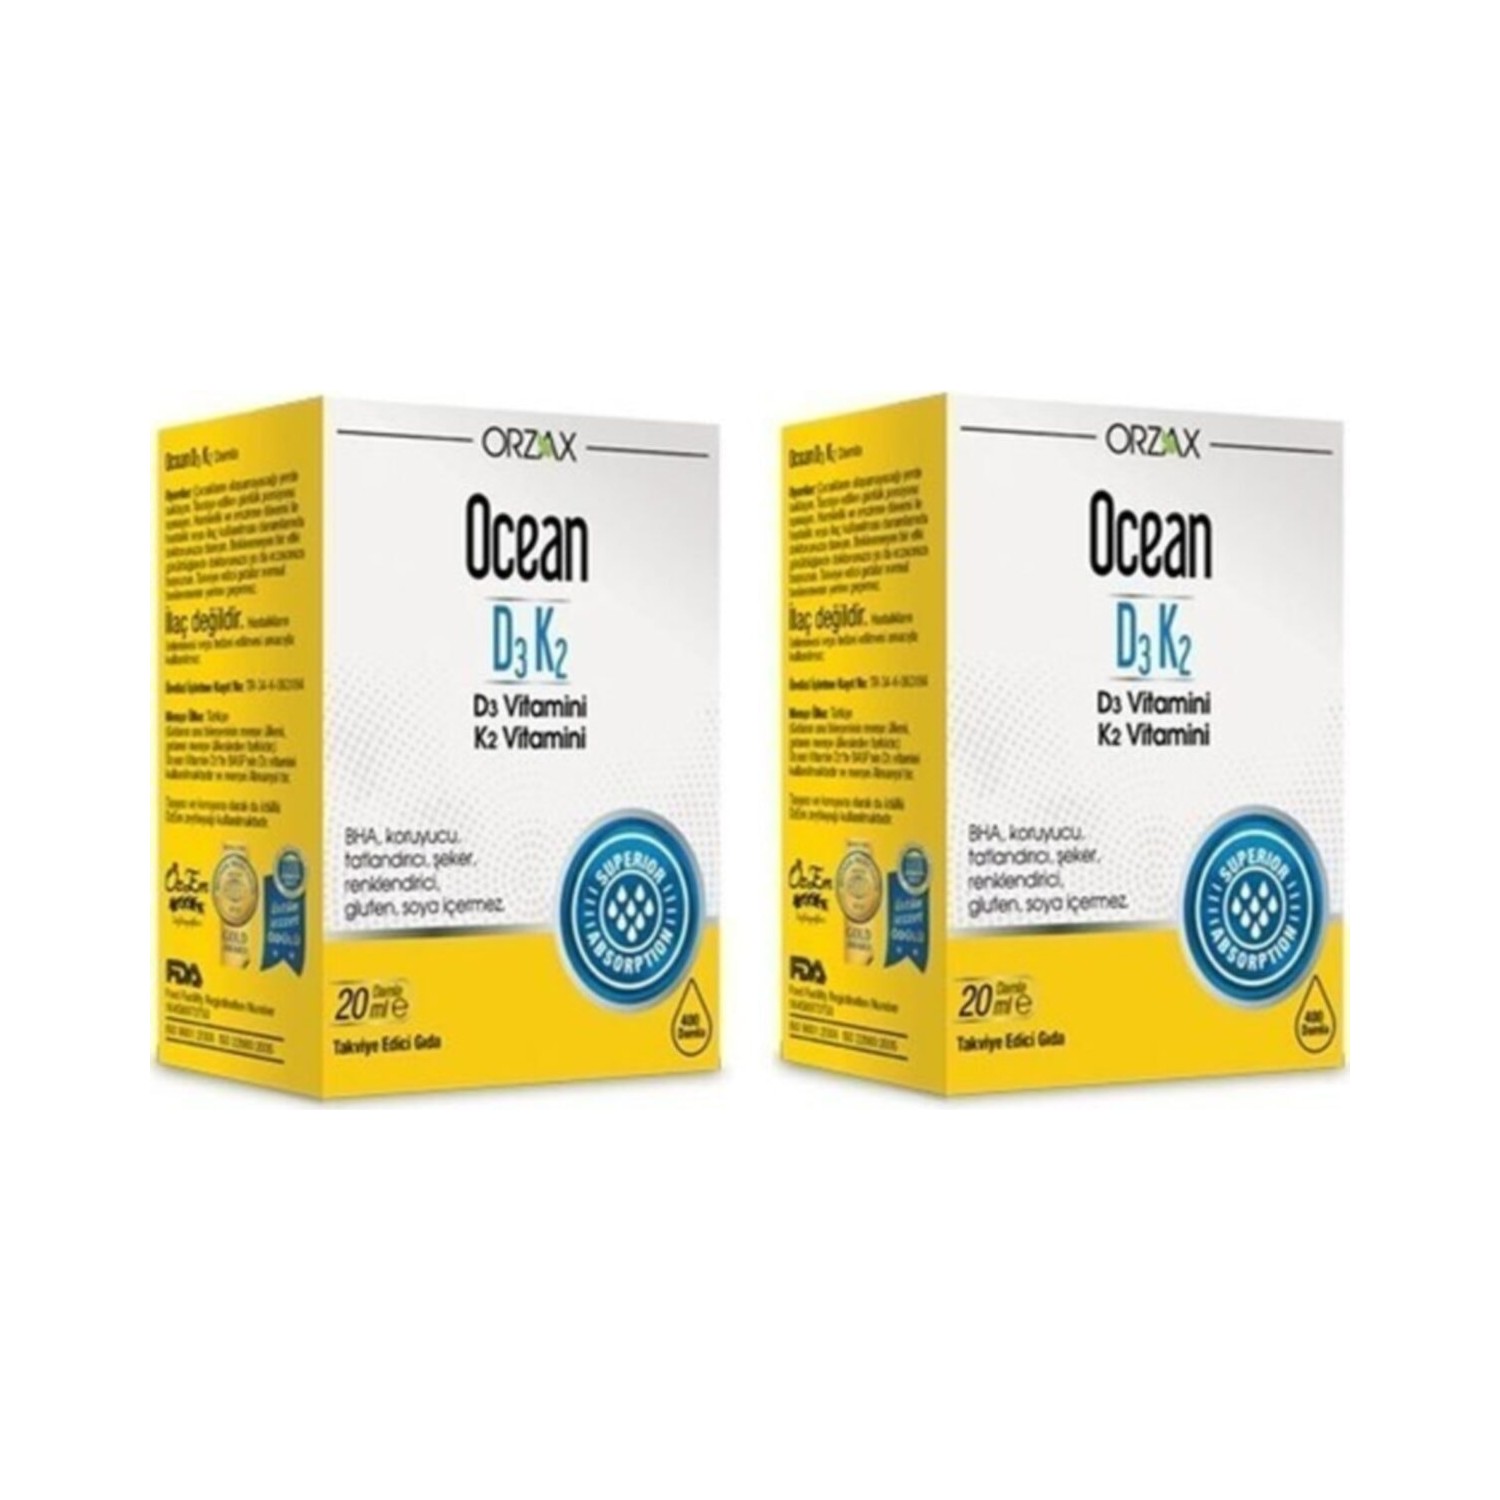 Витаминные капли Orzax Ocean D3 / K2, 2 флакона по 20 мл витаминные капли d3 k2 ocean 2 флакона по 20 мл